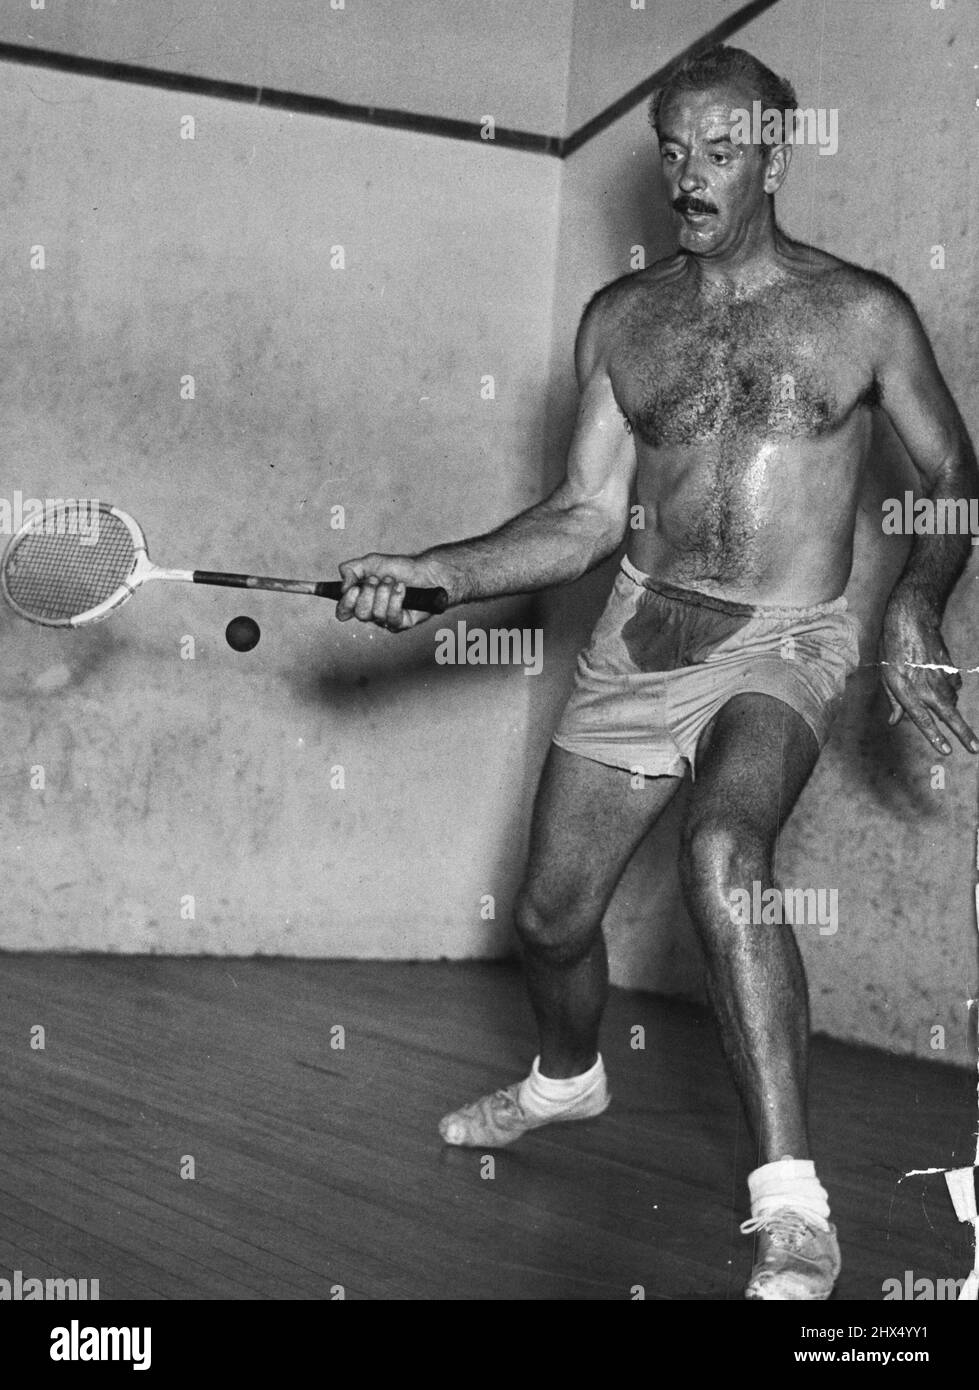 Um sich fit zu halten, spielt Walker regelmäßig Squash-Schläger, kein Spiel für einen faulen Menschen. 12. April 1950. Stockfoto